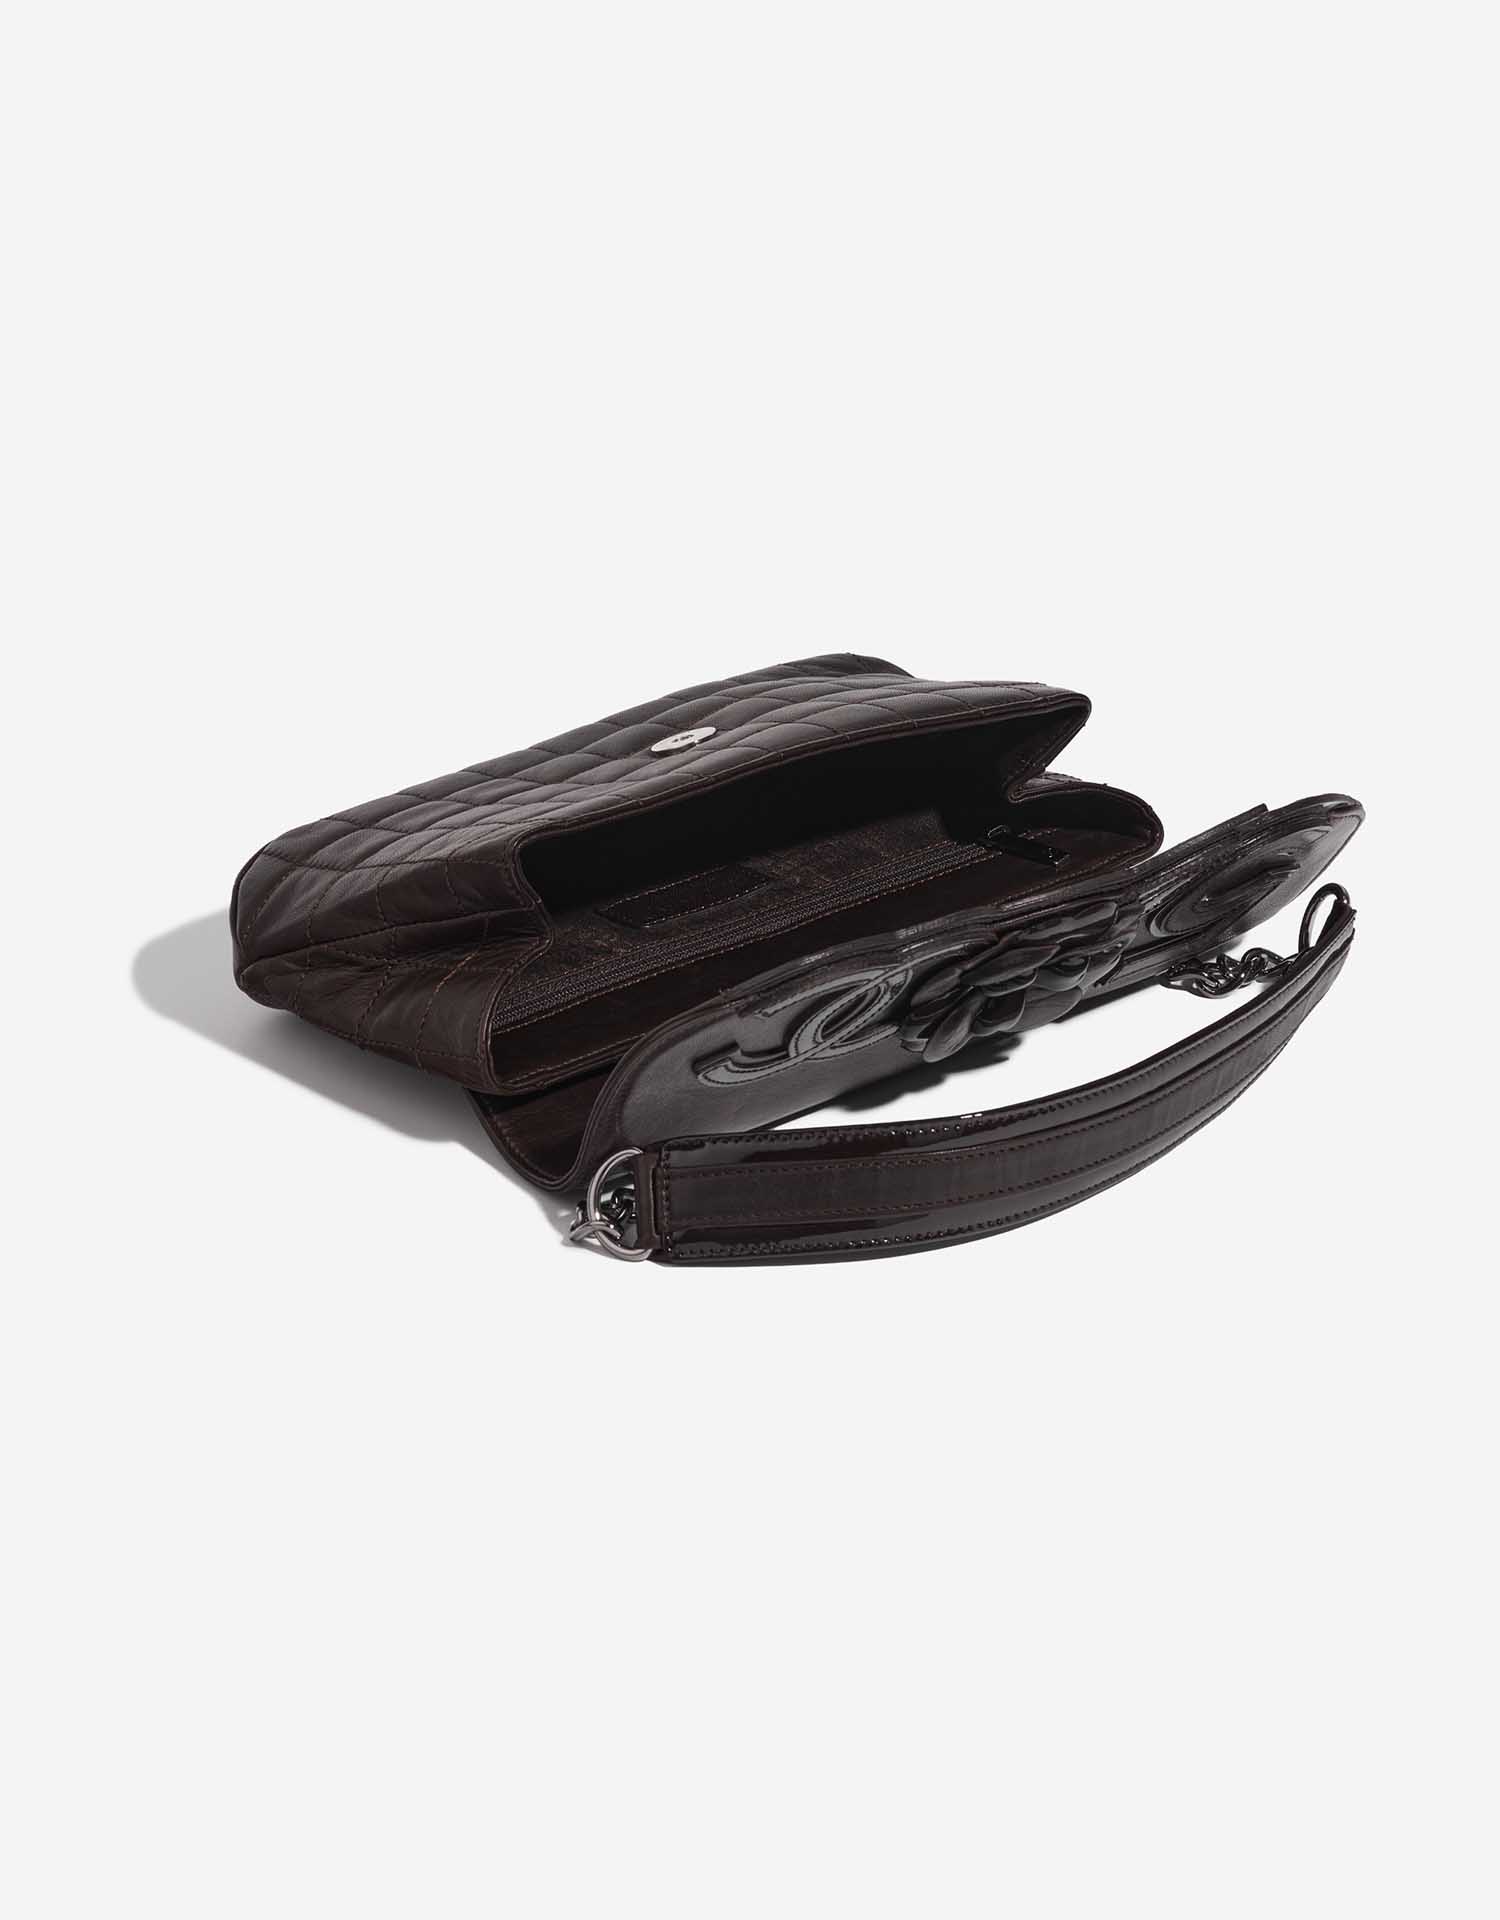 Chanel Baguette Medium Brown Inside  | Sell your designer bag on Saclab.com